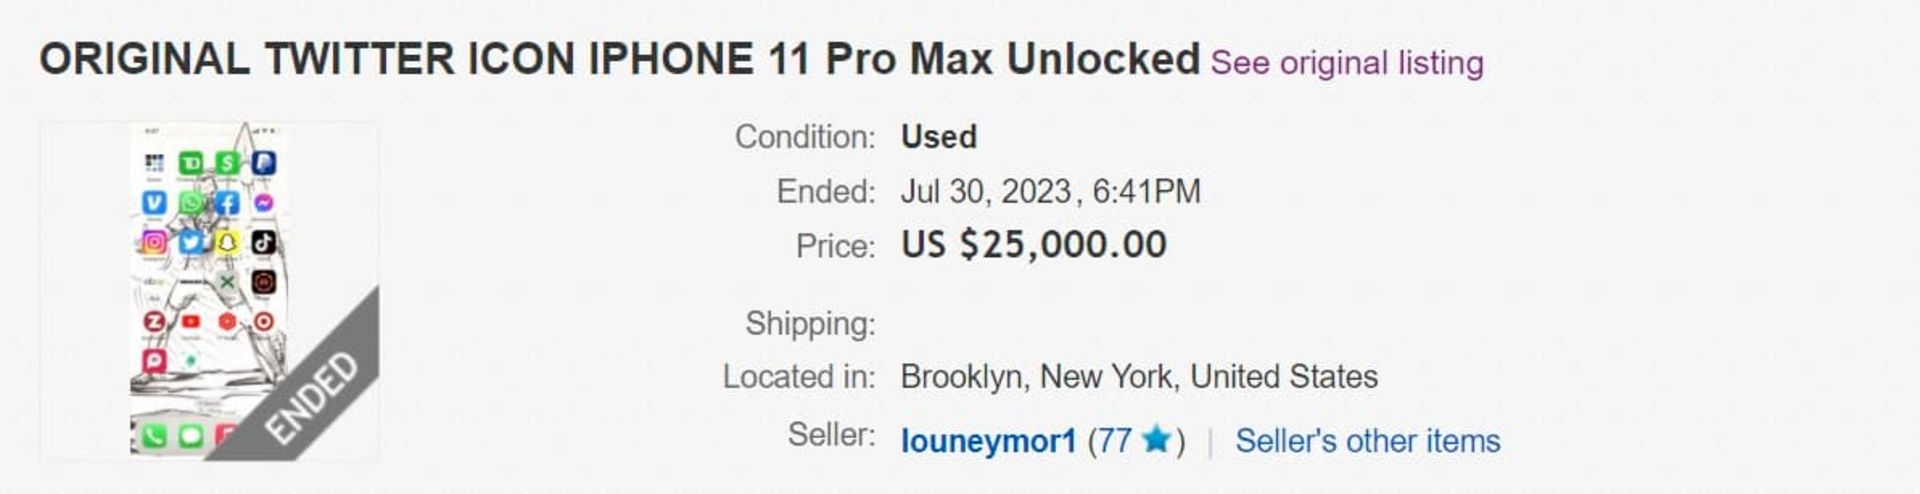 آیفون ۱۱ پرو مکس با نسخه قدیمی توییتر در eBay